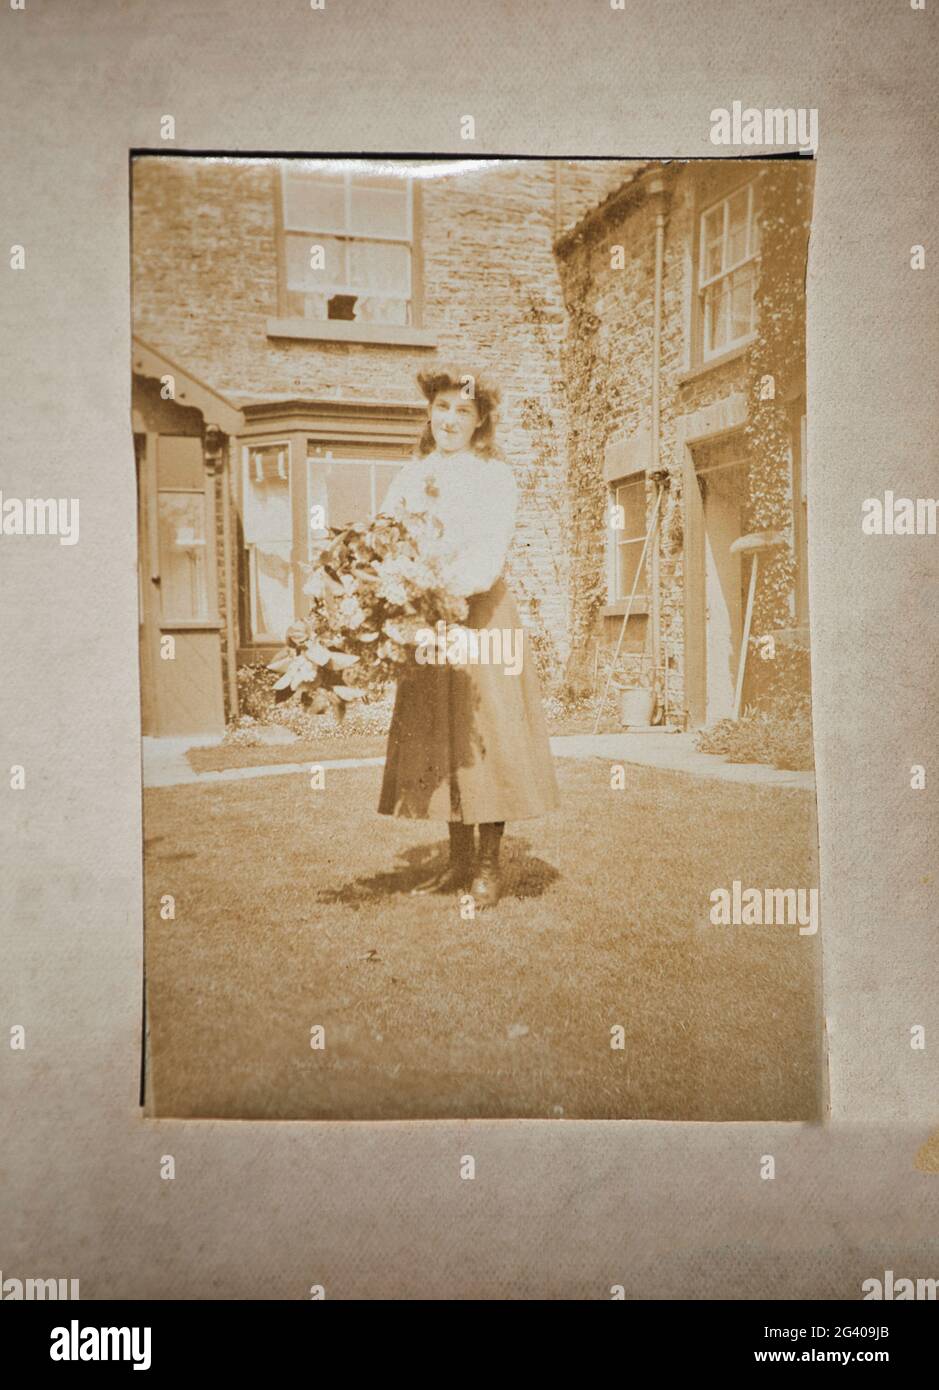 Photographie sépia authentique de jeune femme souriante portant des fleurs debout devant la maison. Concept de nostalgie, style de vie, historique Banque D'Images